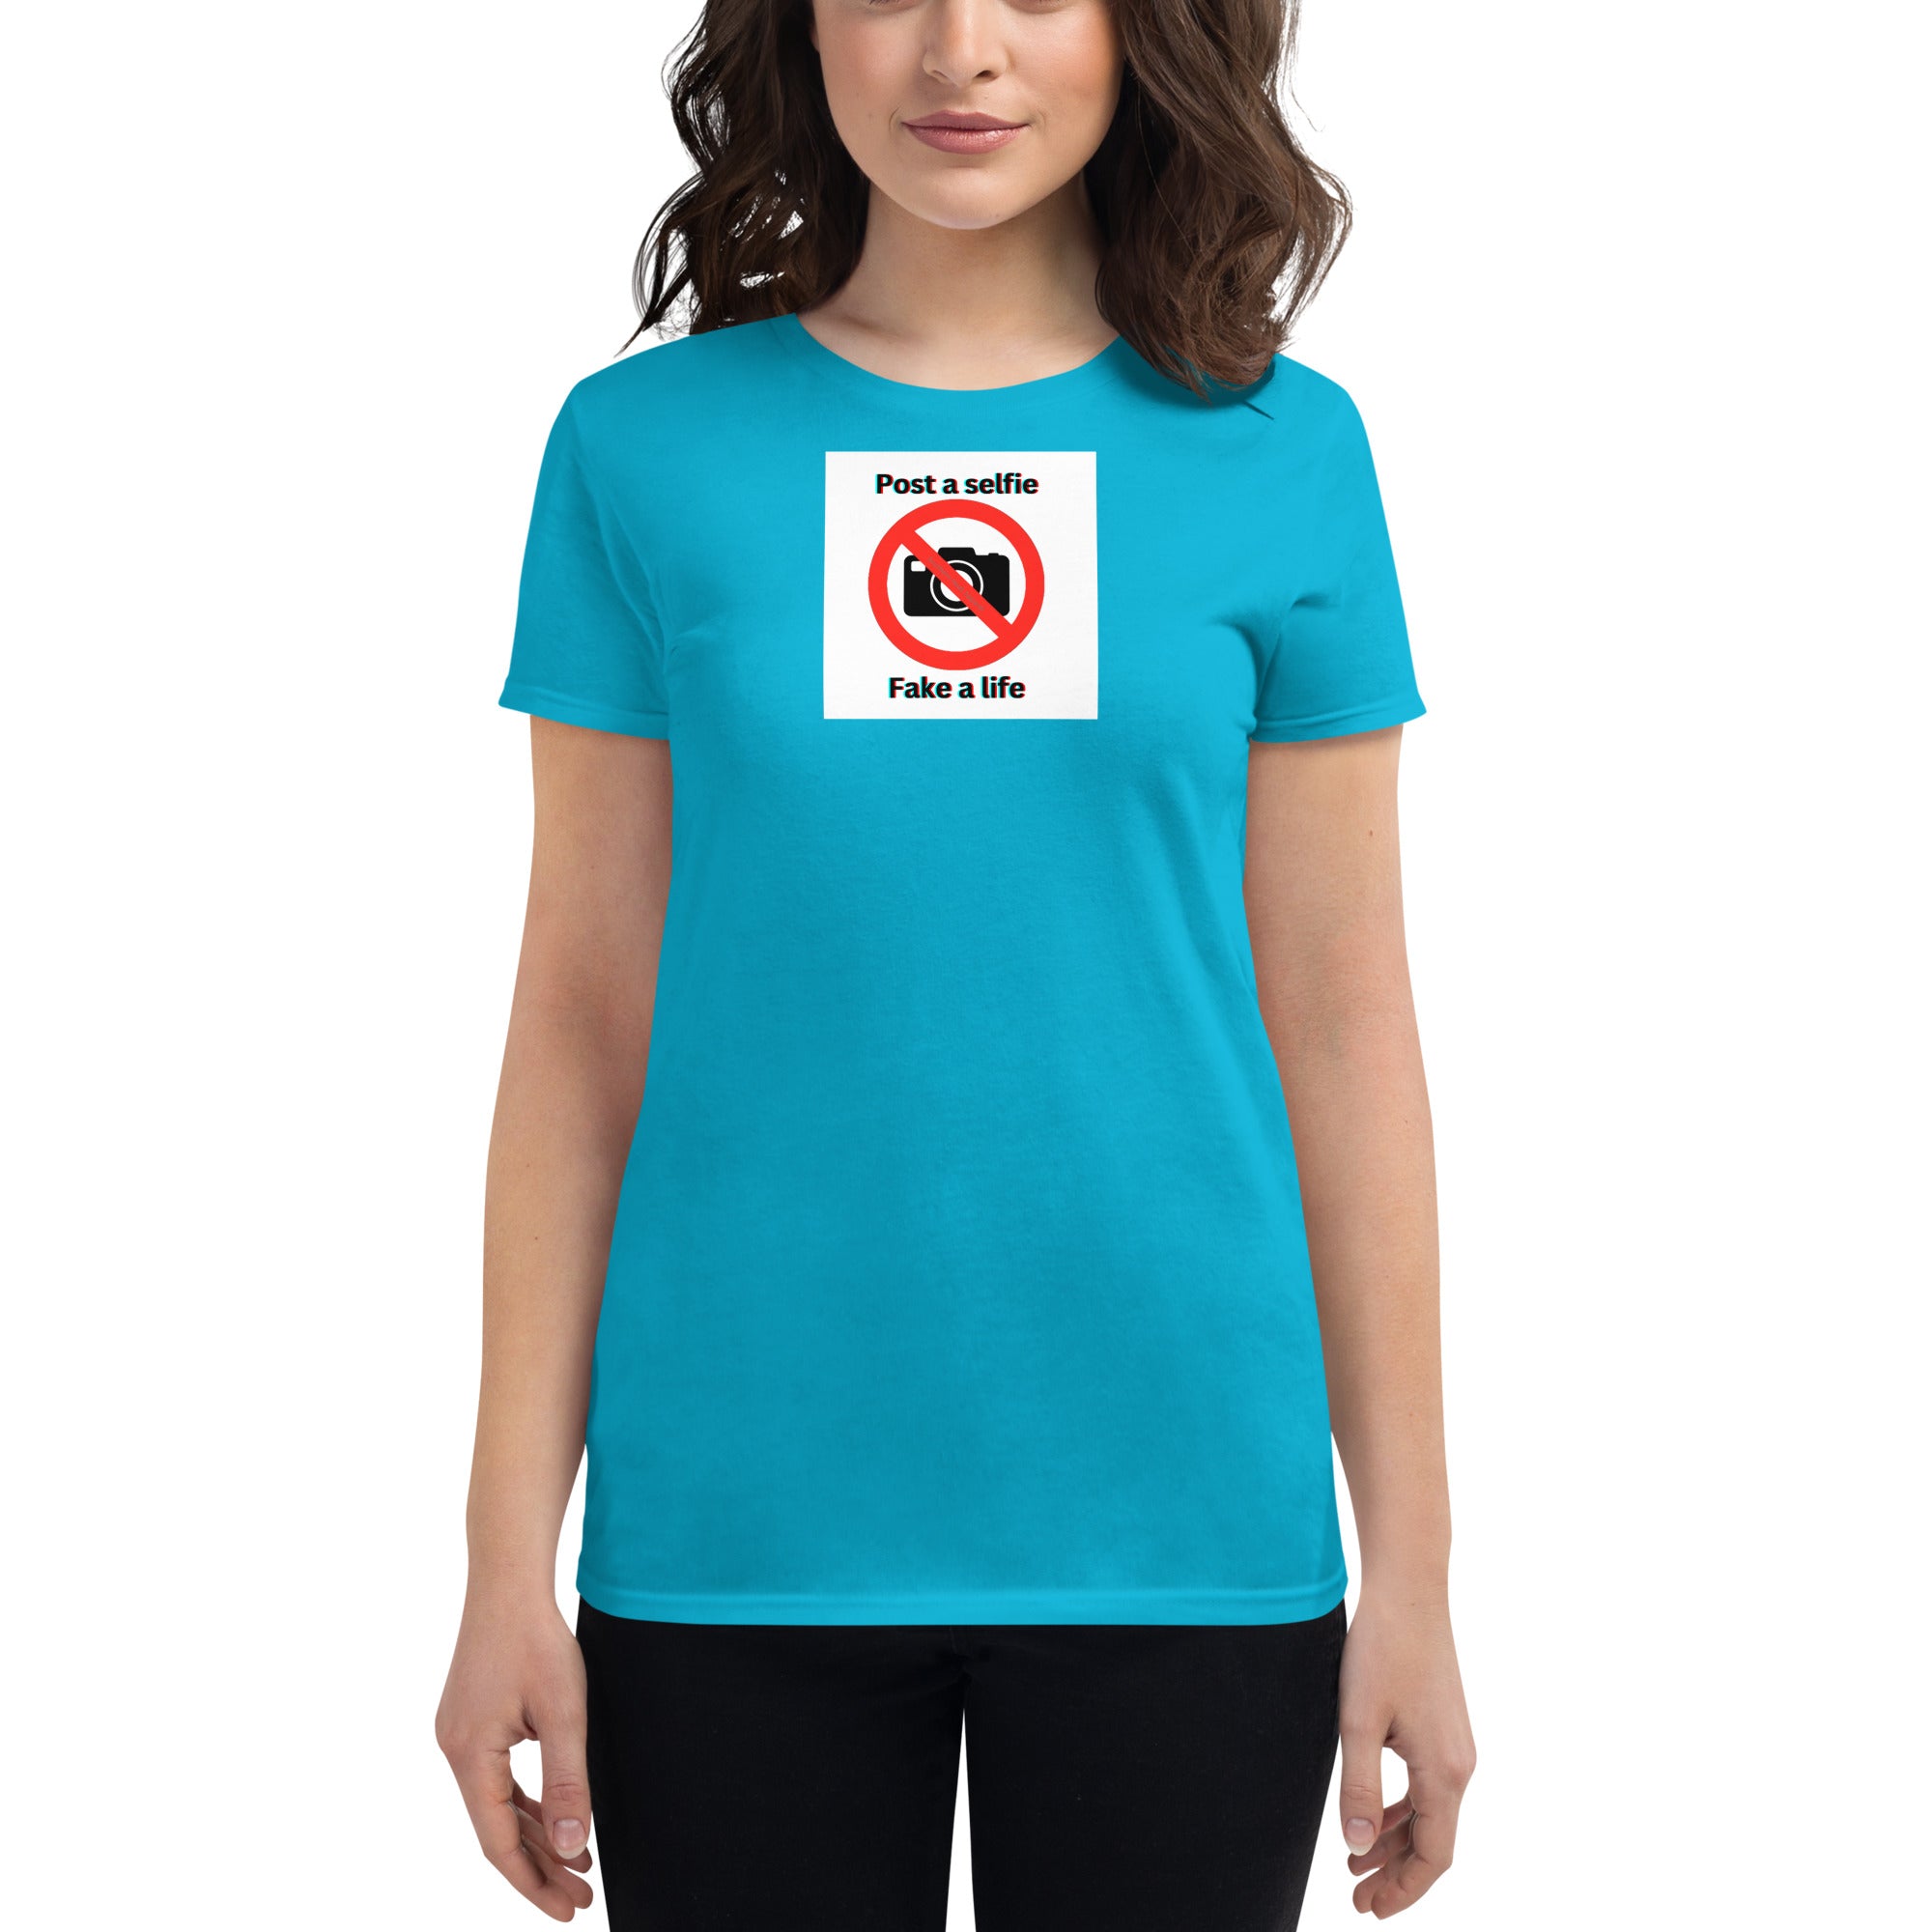 Post a selfie-Women's short sleeve t-shirt